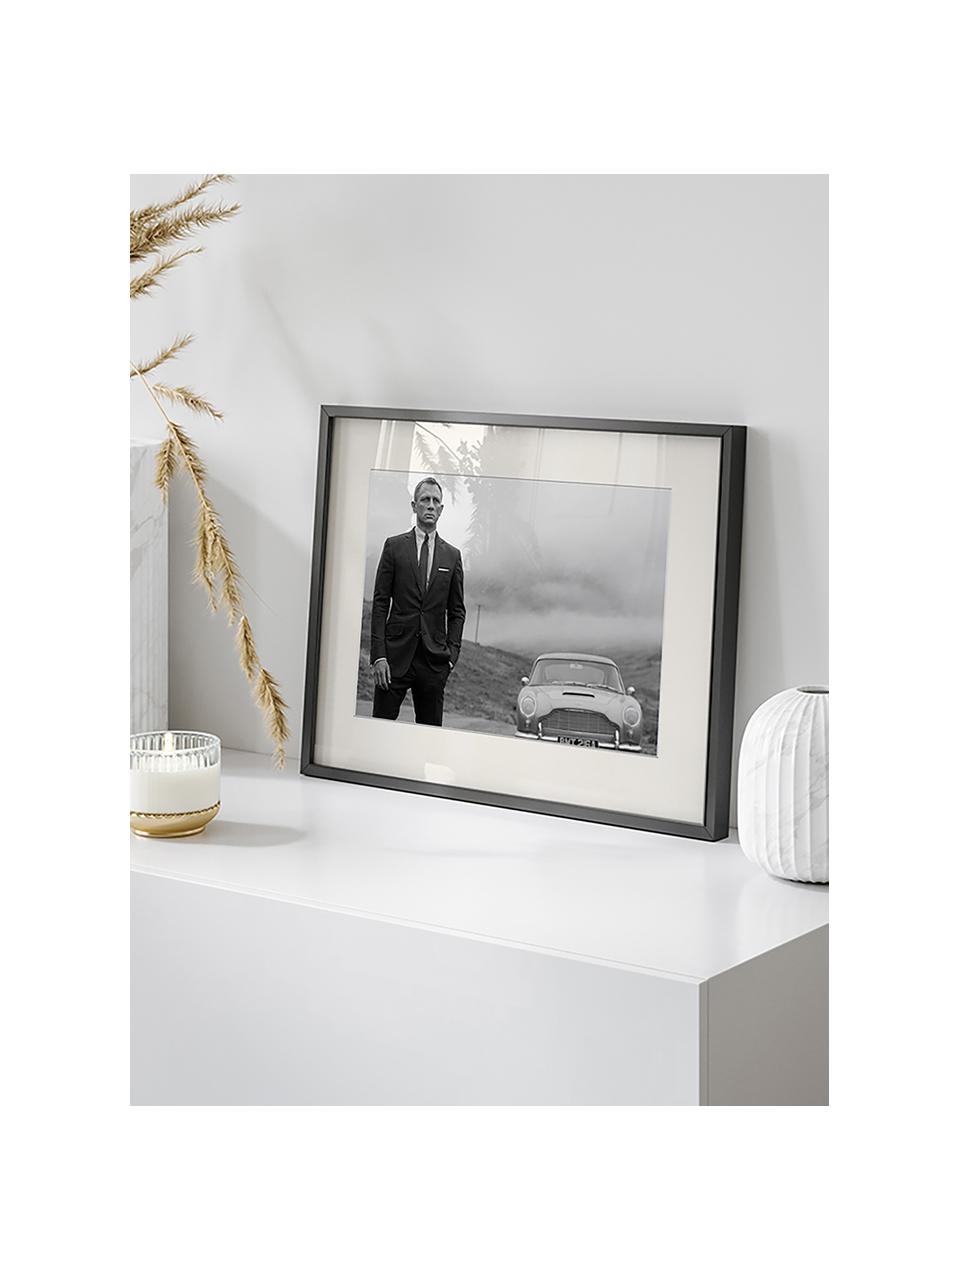 Gerahmte Fotografie Daniel Craig as James Bond, Rahmen: Buchenholz, FSC zertifizi, Bild: Digitaldruck auf Papier, , Front: Acrylglas, Schwarz, Off White, B 43 x H 33 cm